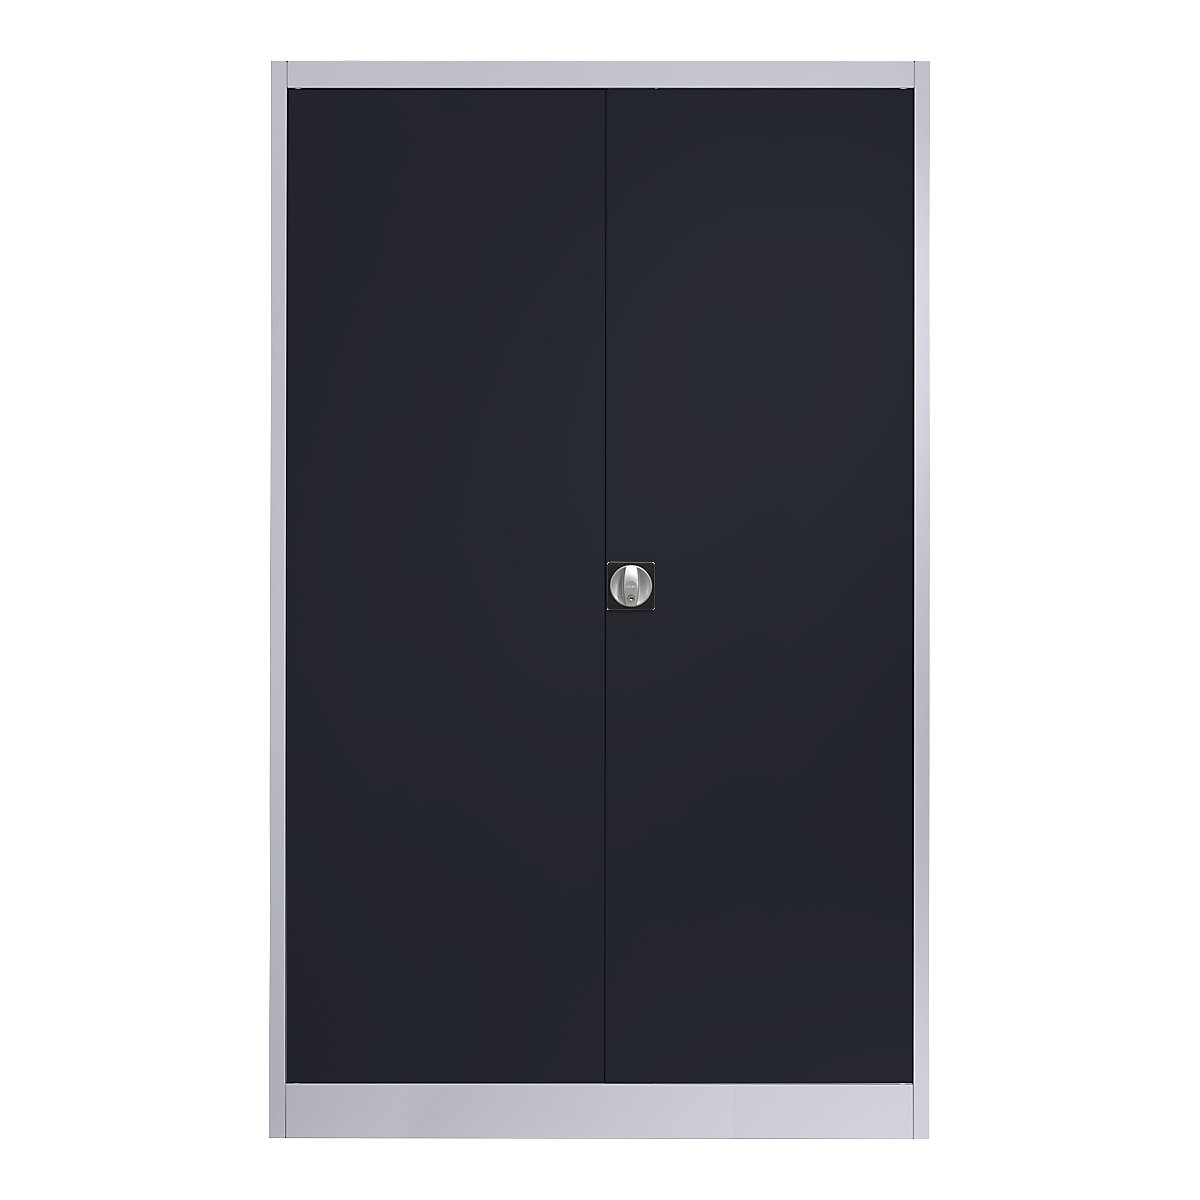 Szafa stalowa z drzwiami skrzydłowymi – mauser, 4 półki, szer. 1200 mm, biały aluminium / antracytowy, gł. zewn. 420 mm